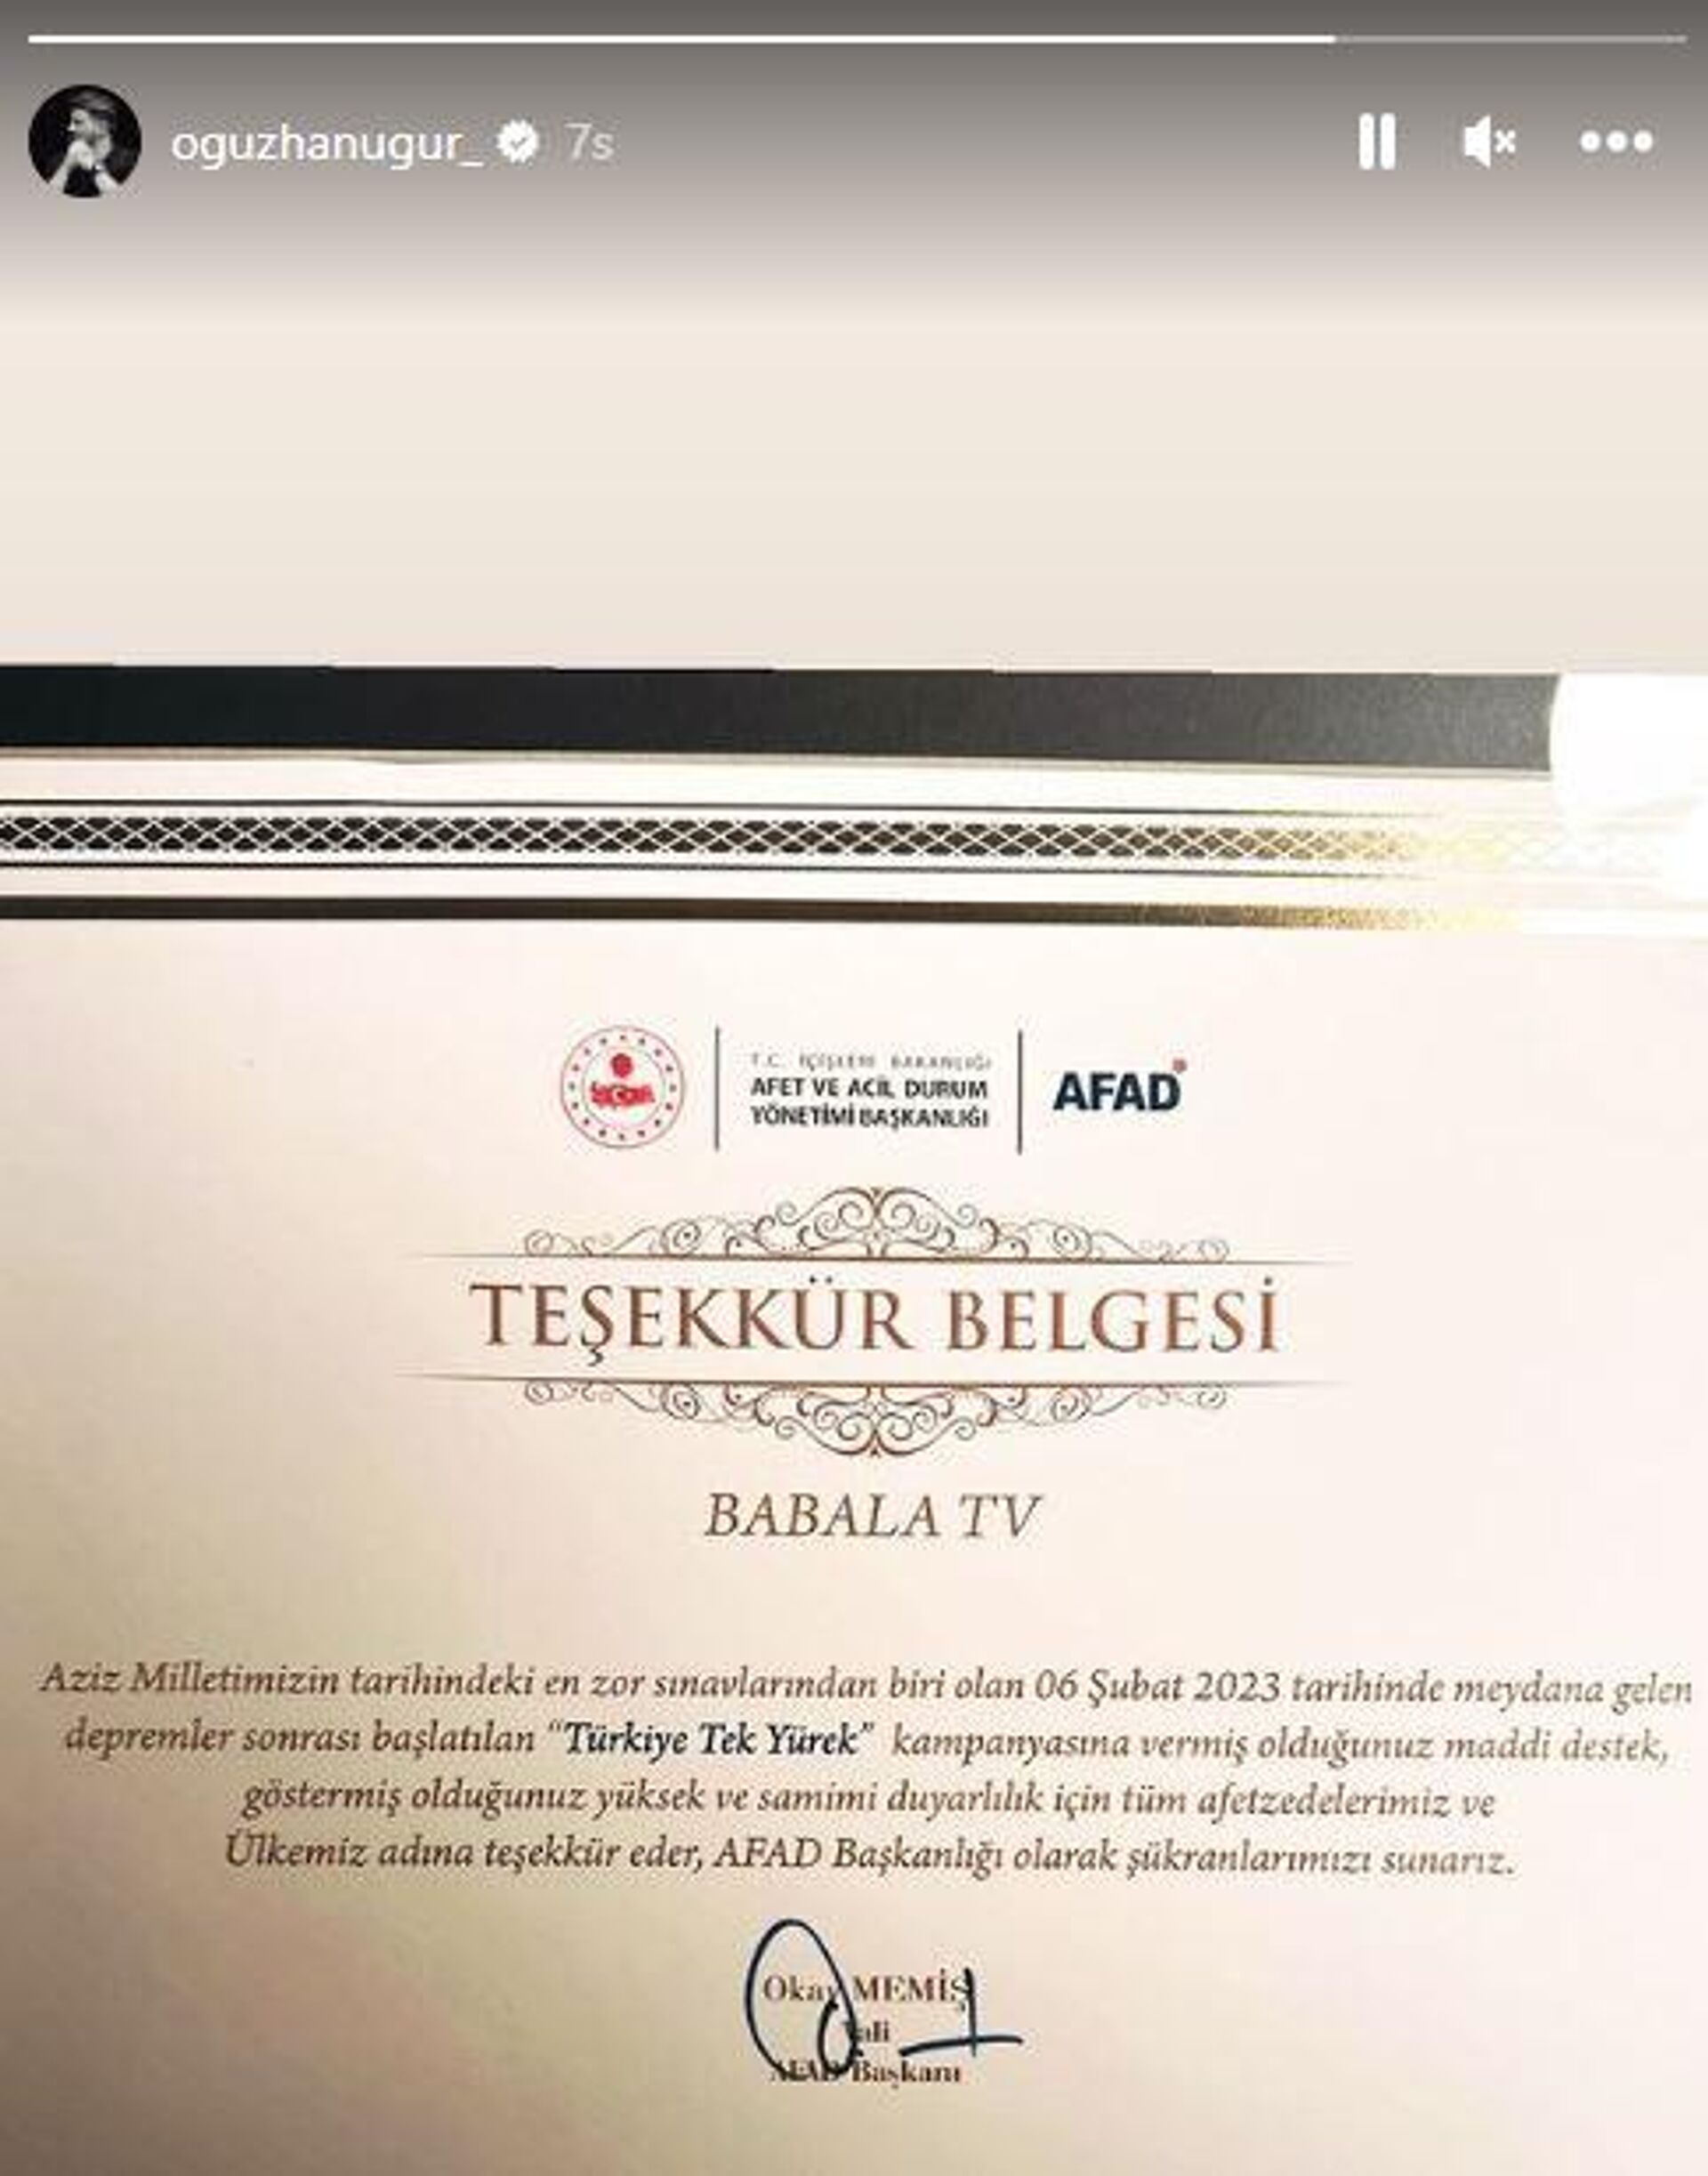 Babala TV sunucusu Oğuzhan Uğur AFAD'ın teşekkür belgesini Instagram hesabından paylaşmıştı. - Sputnik Türkiye, 1920, 02.11.2023